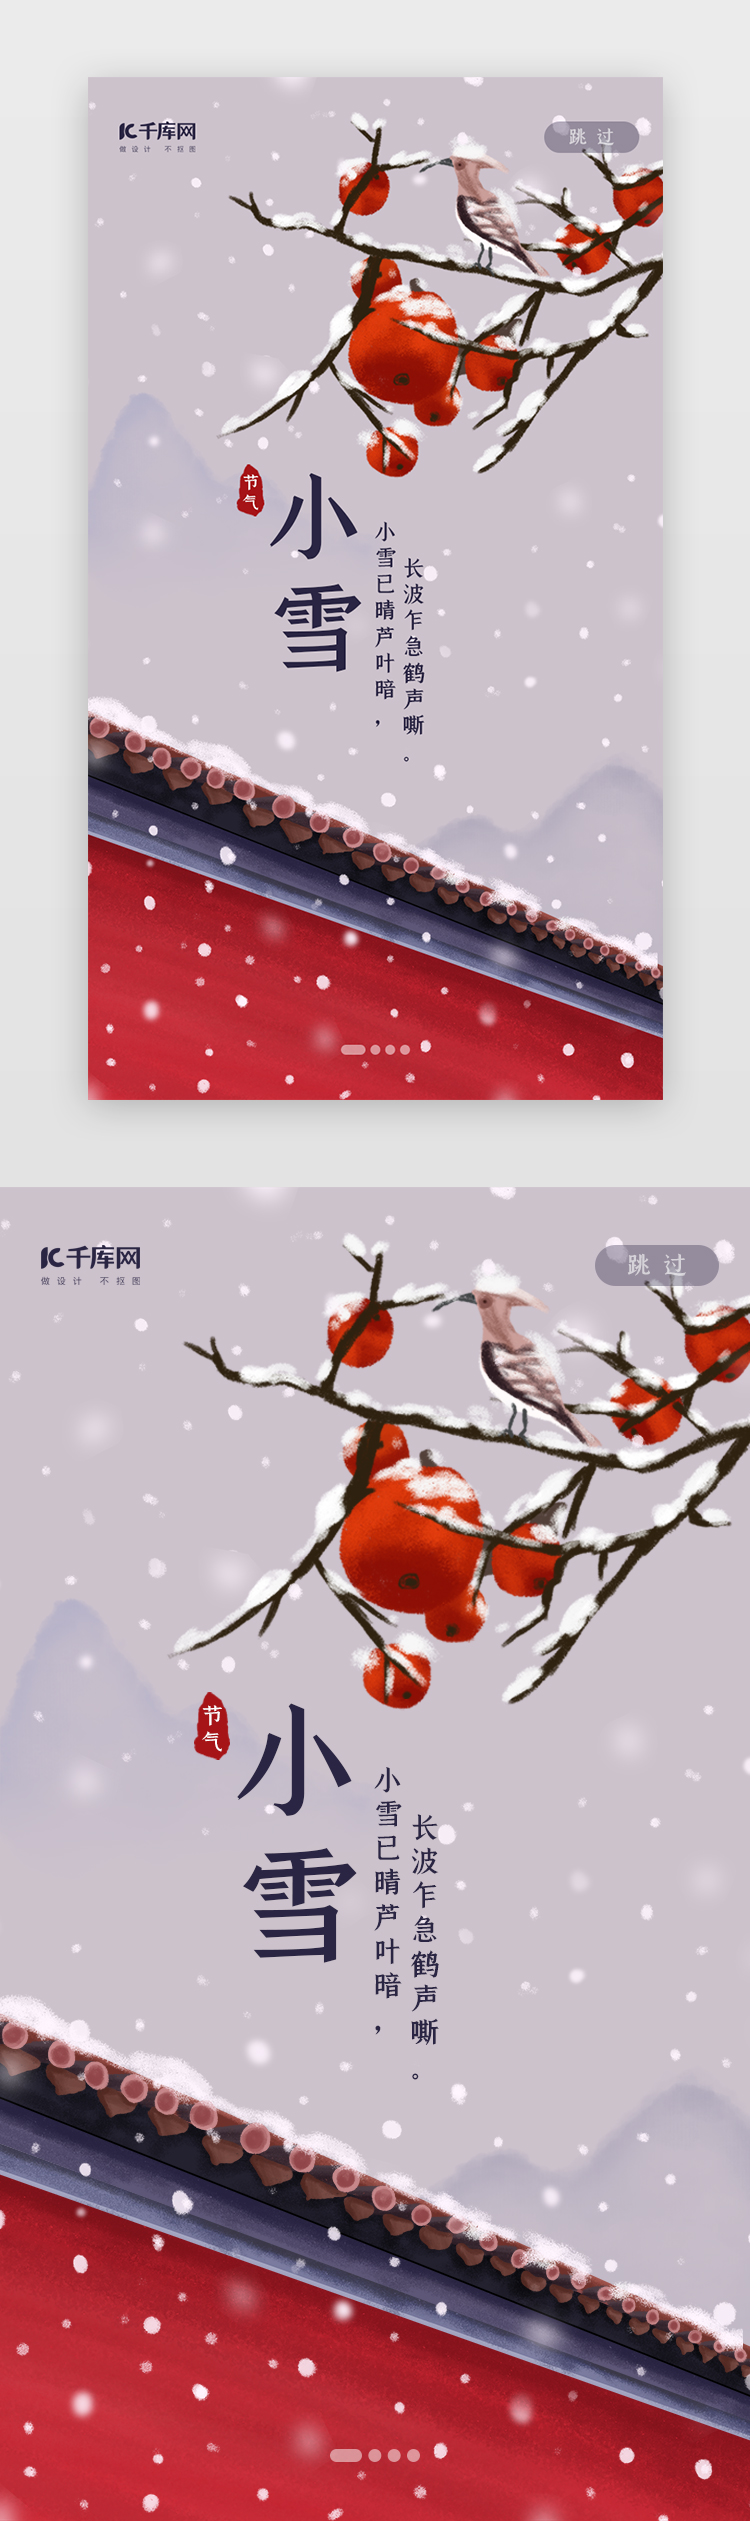 中国风二十四节气之小雪闪屏启动页引导页闪屏图片